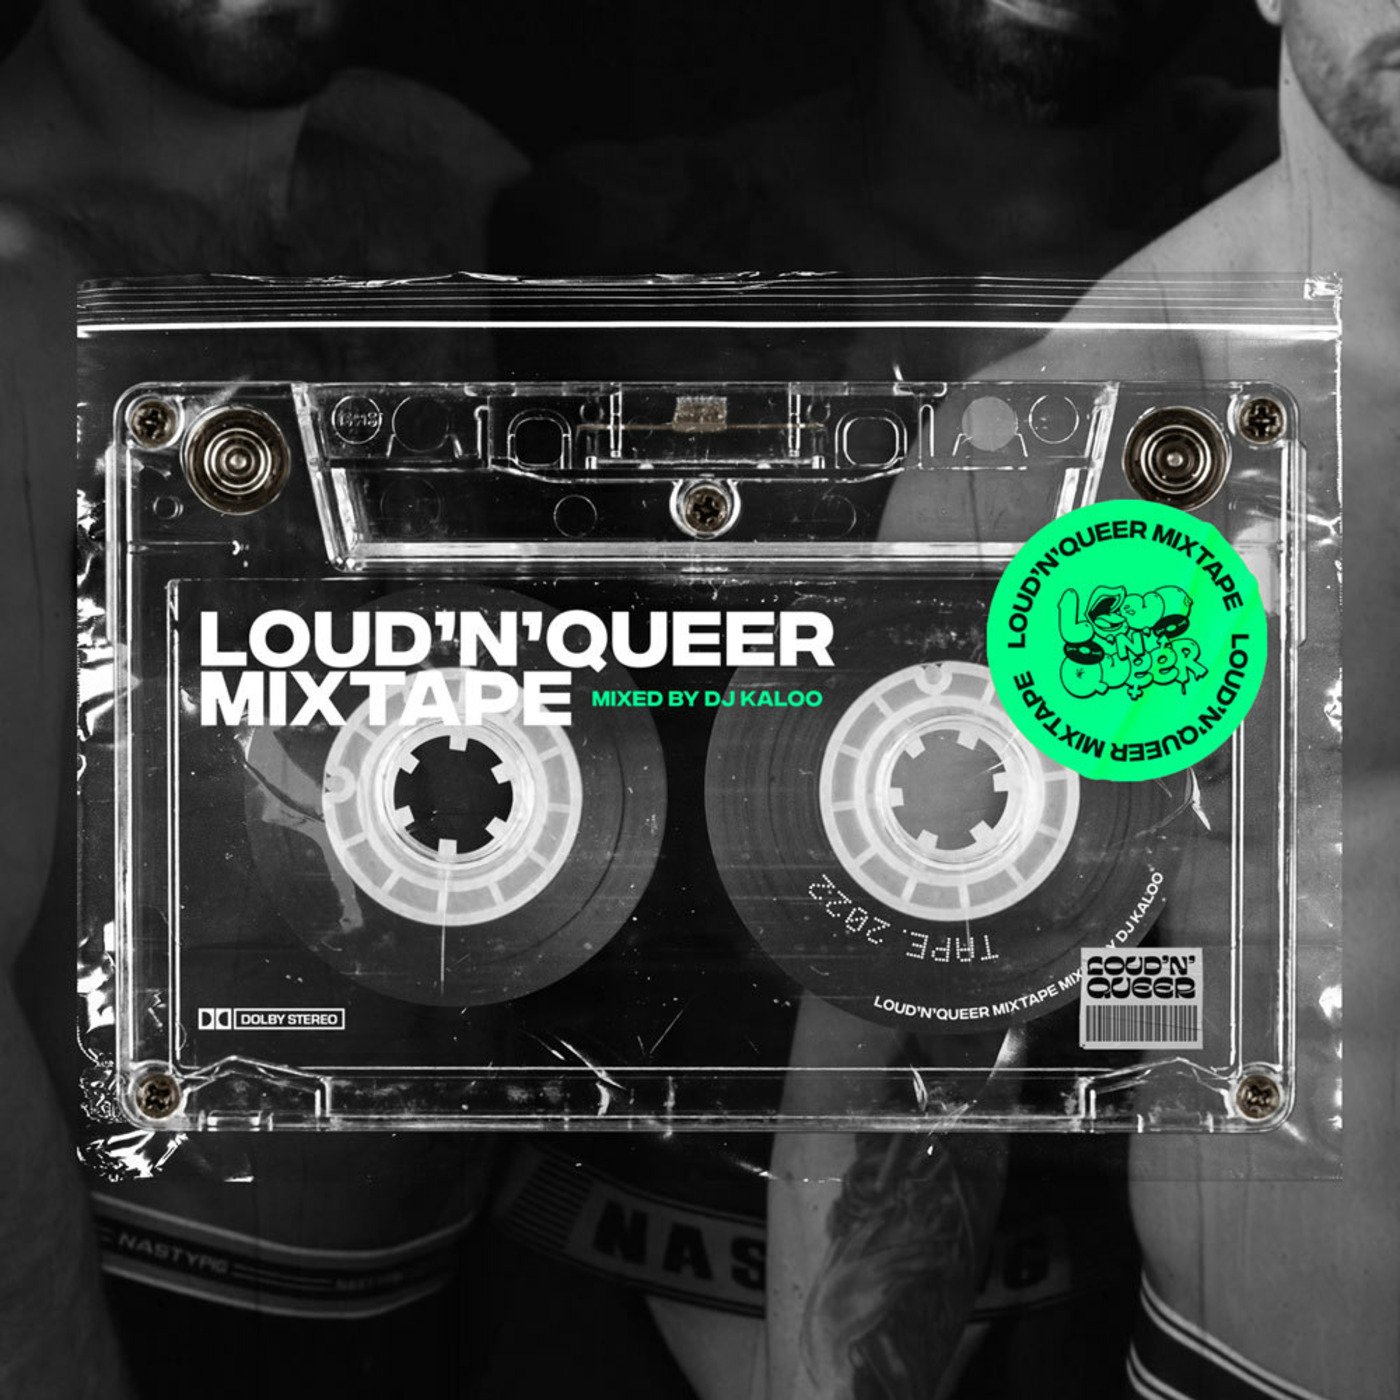 Loud'N'Queer Mixtape by DJ Kaloo - October 2022